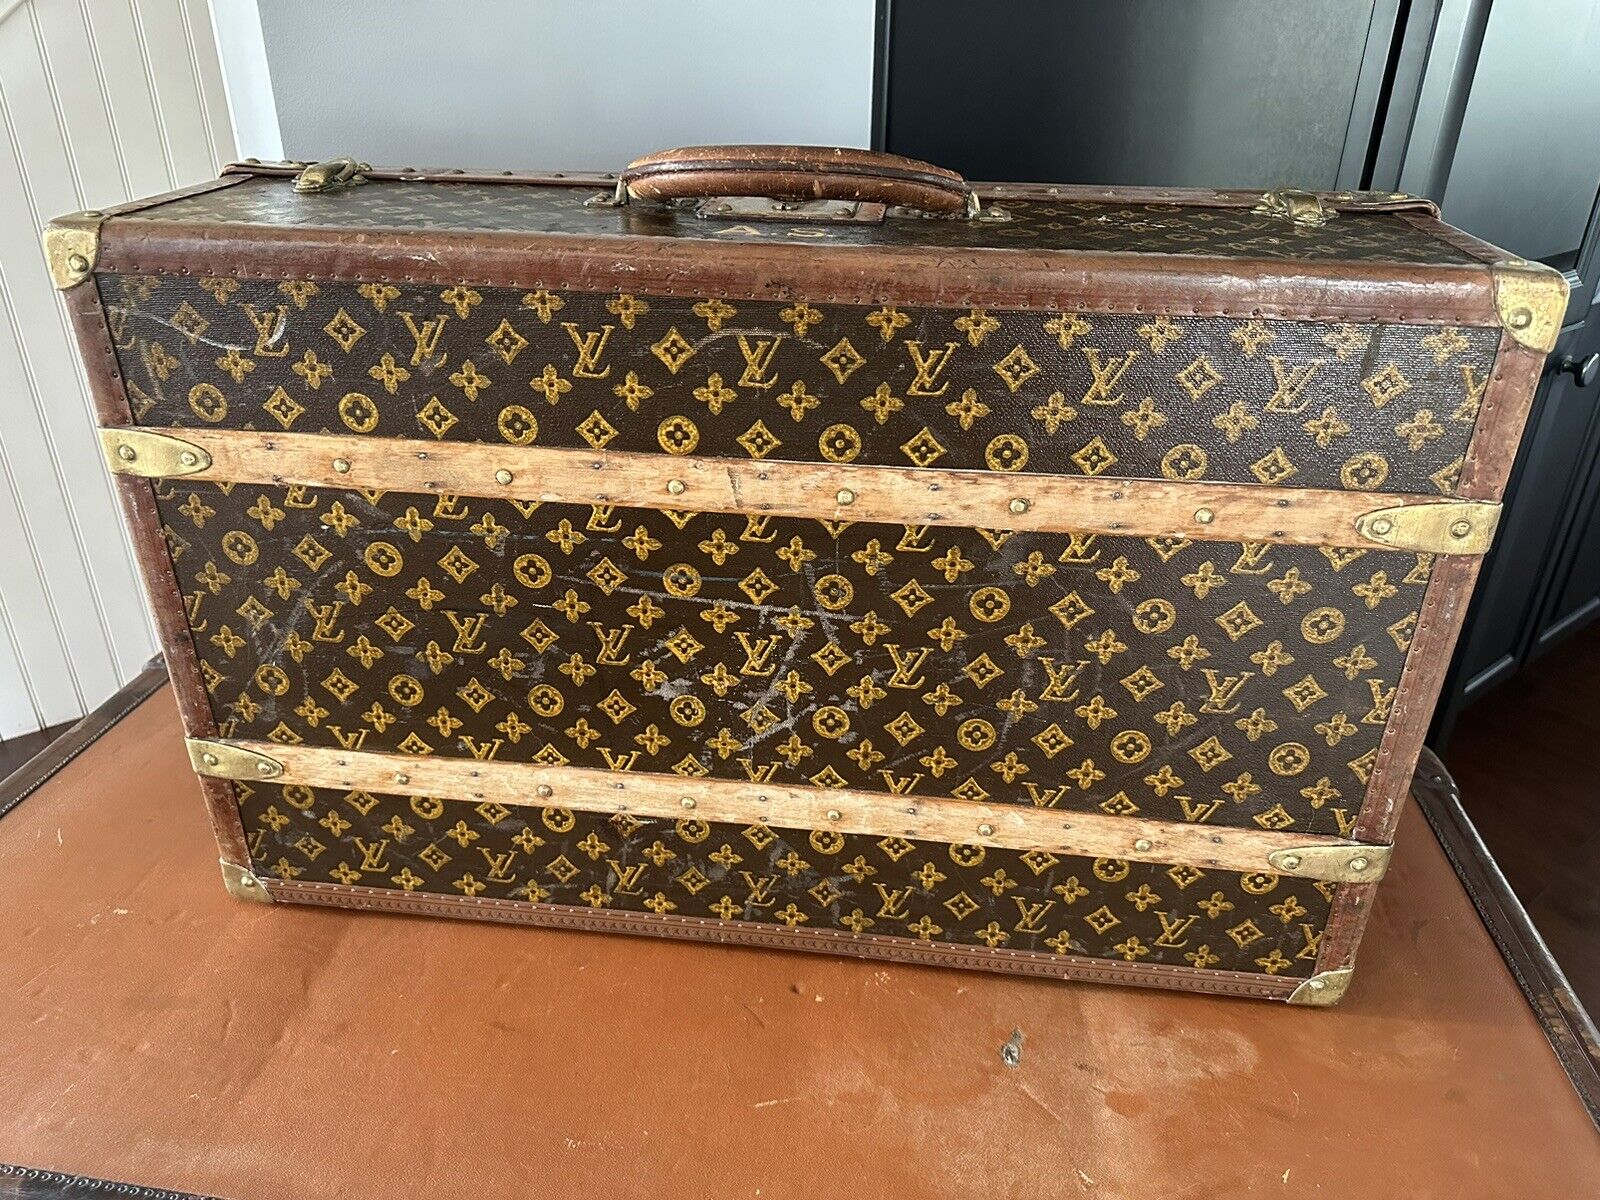 Pinth Vintage Luggage - Antique Vintage Louis Vuitton Trunks & Suitcases